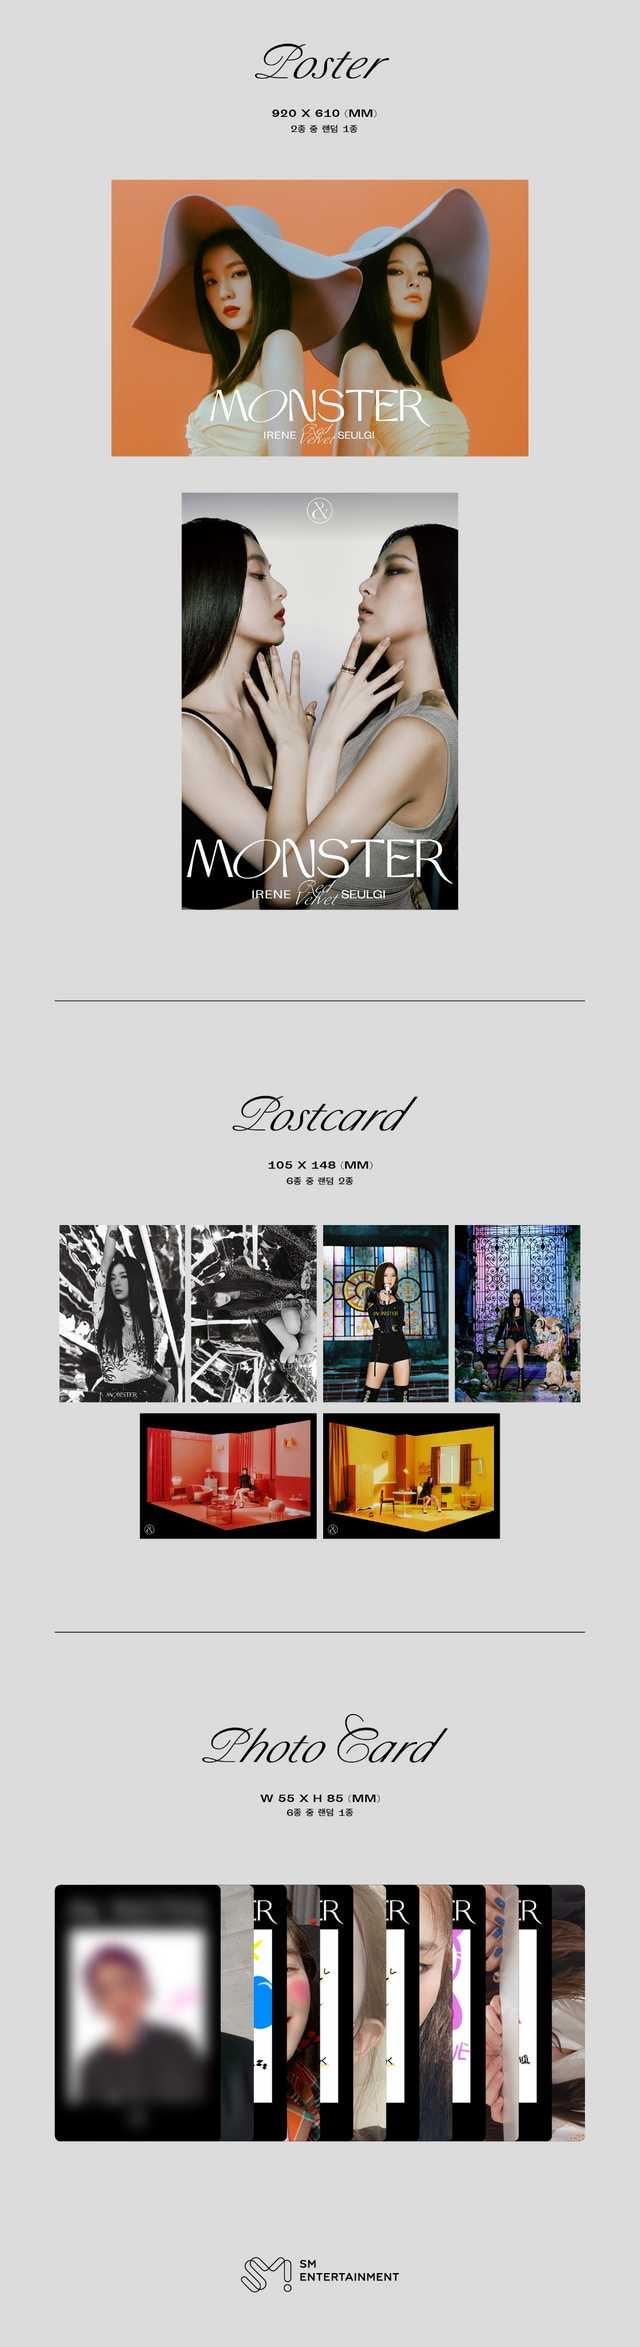 Red Velvet - Irene & Seulgi - Monster - Base Note Version - J-Store Online